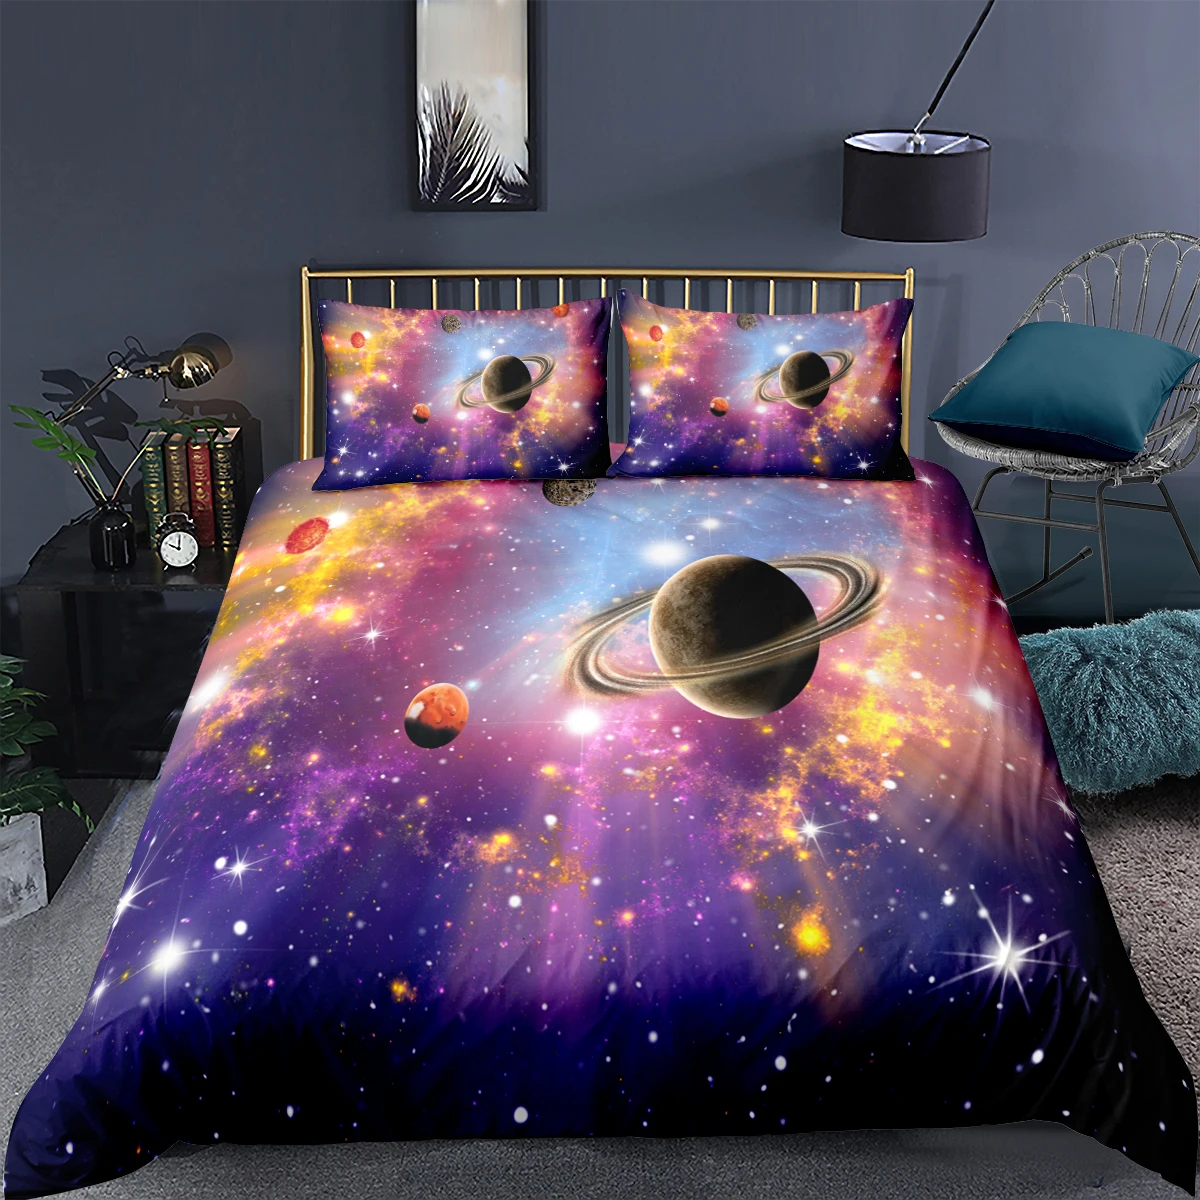 

3d постельное белье, серия звездное небо, космическое одеяло, чехлы, королева, галактика, планета, Печатный пододеяльник, мягкий домашний дек...